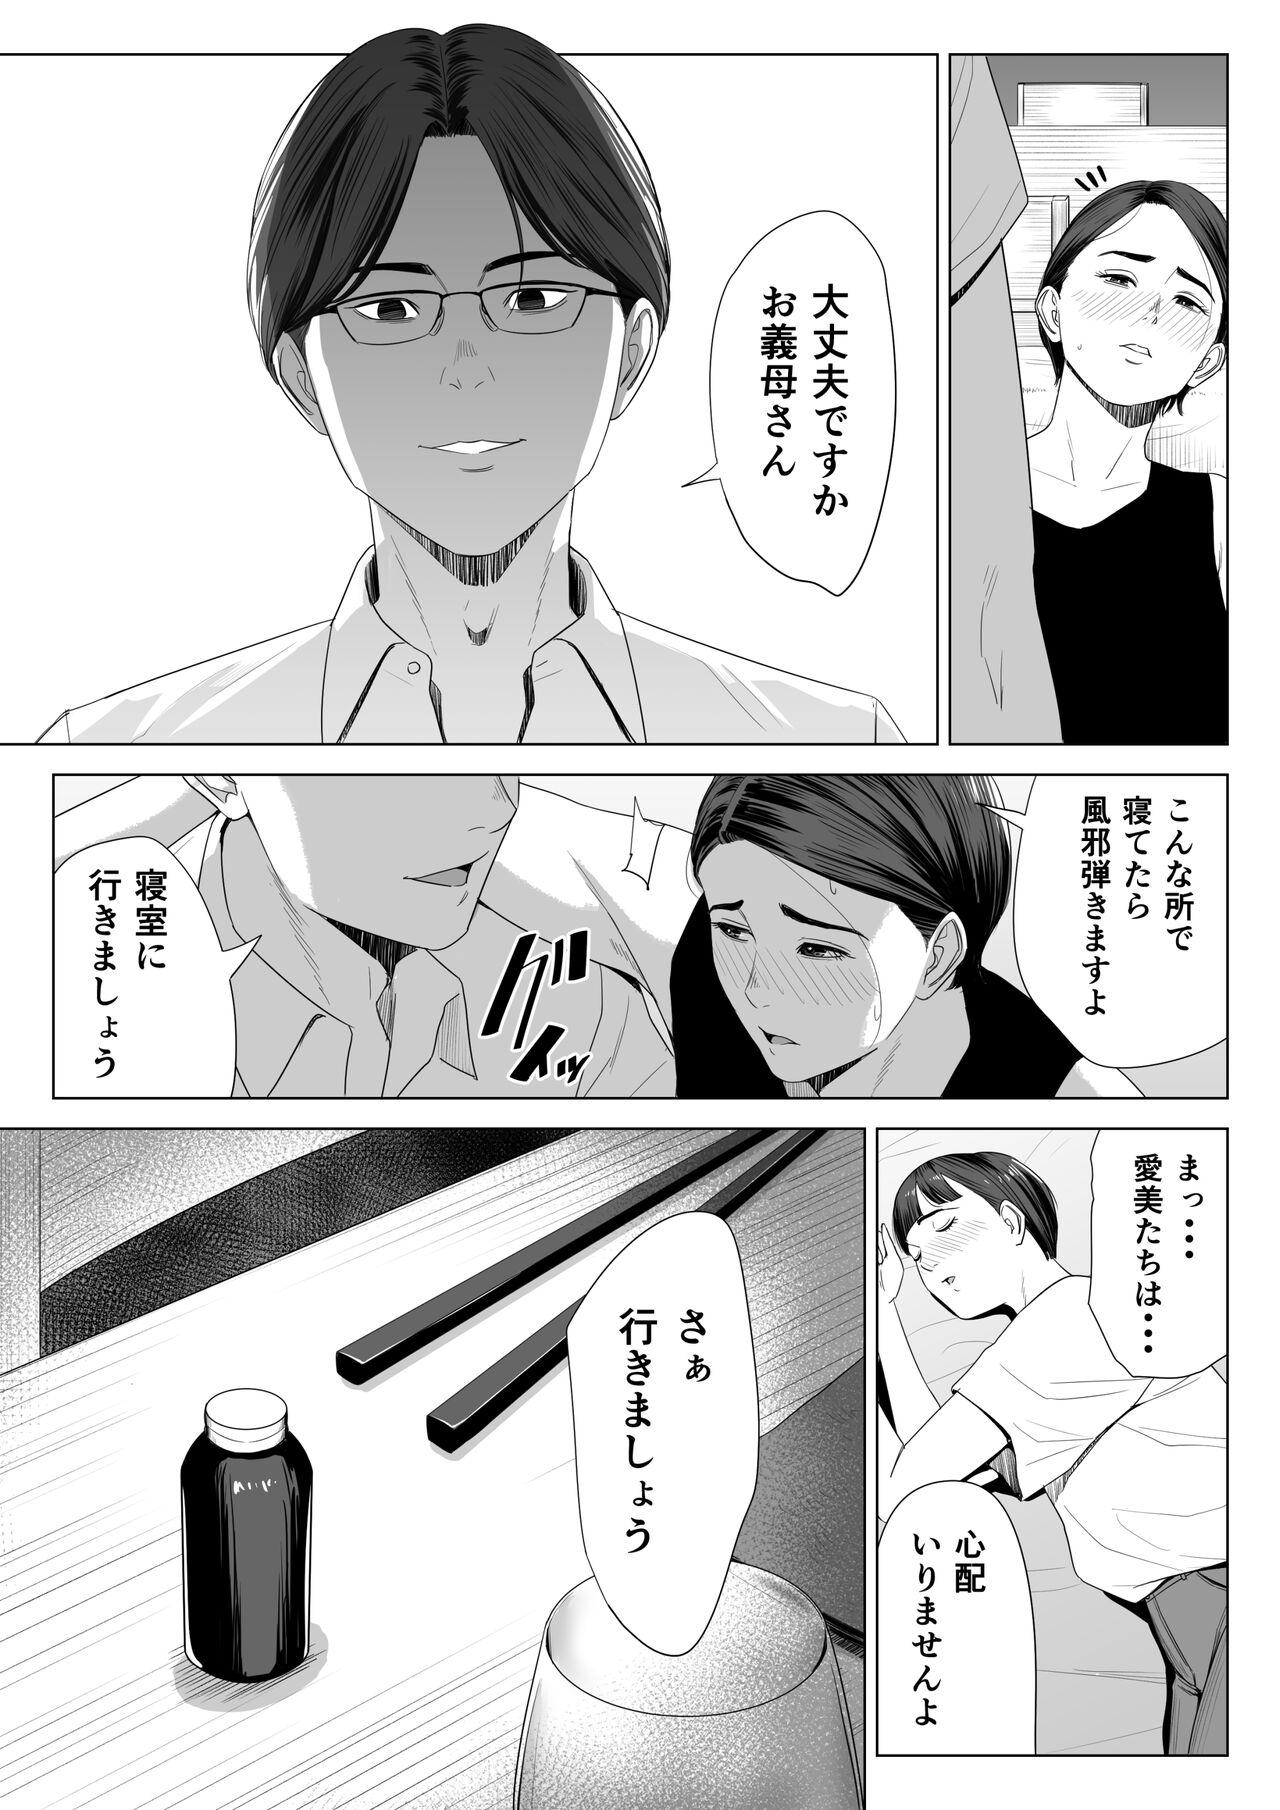 Friend Gibo no tsukaeru karada. - Original Fitness - Page 10